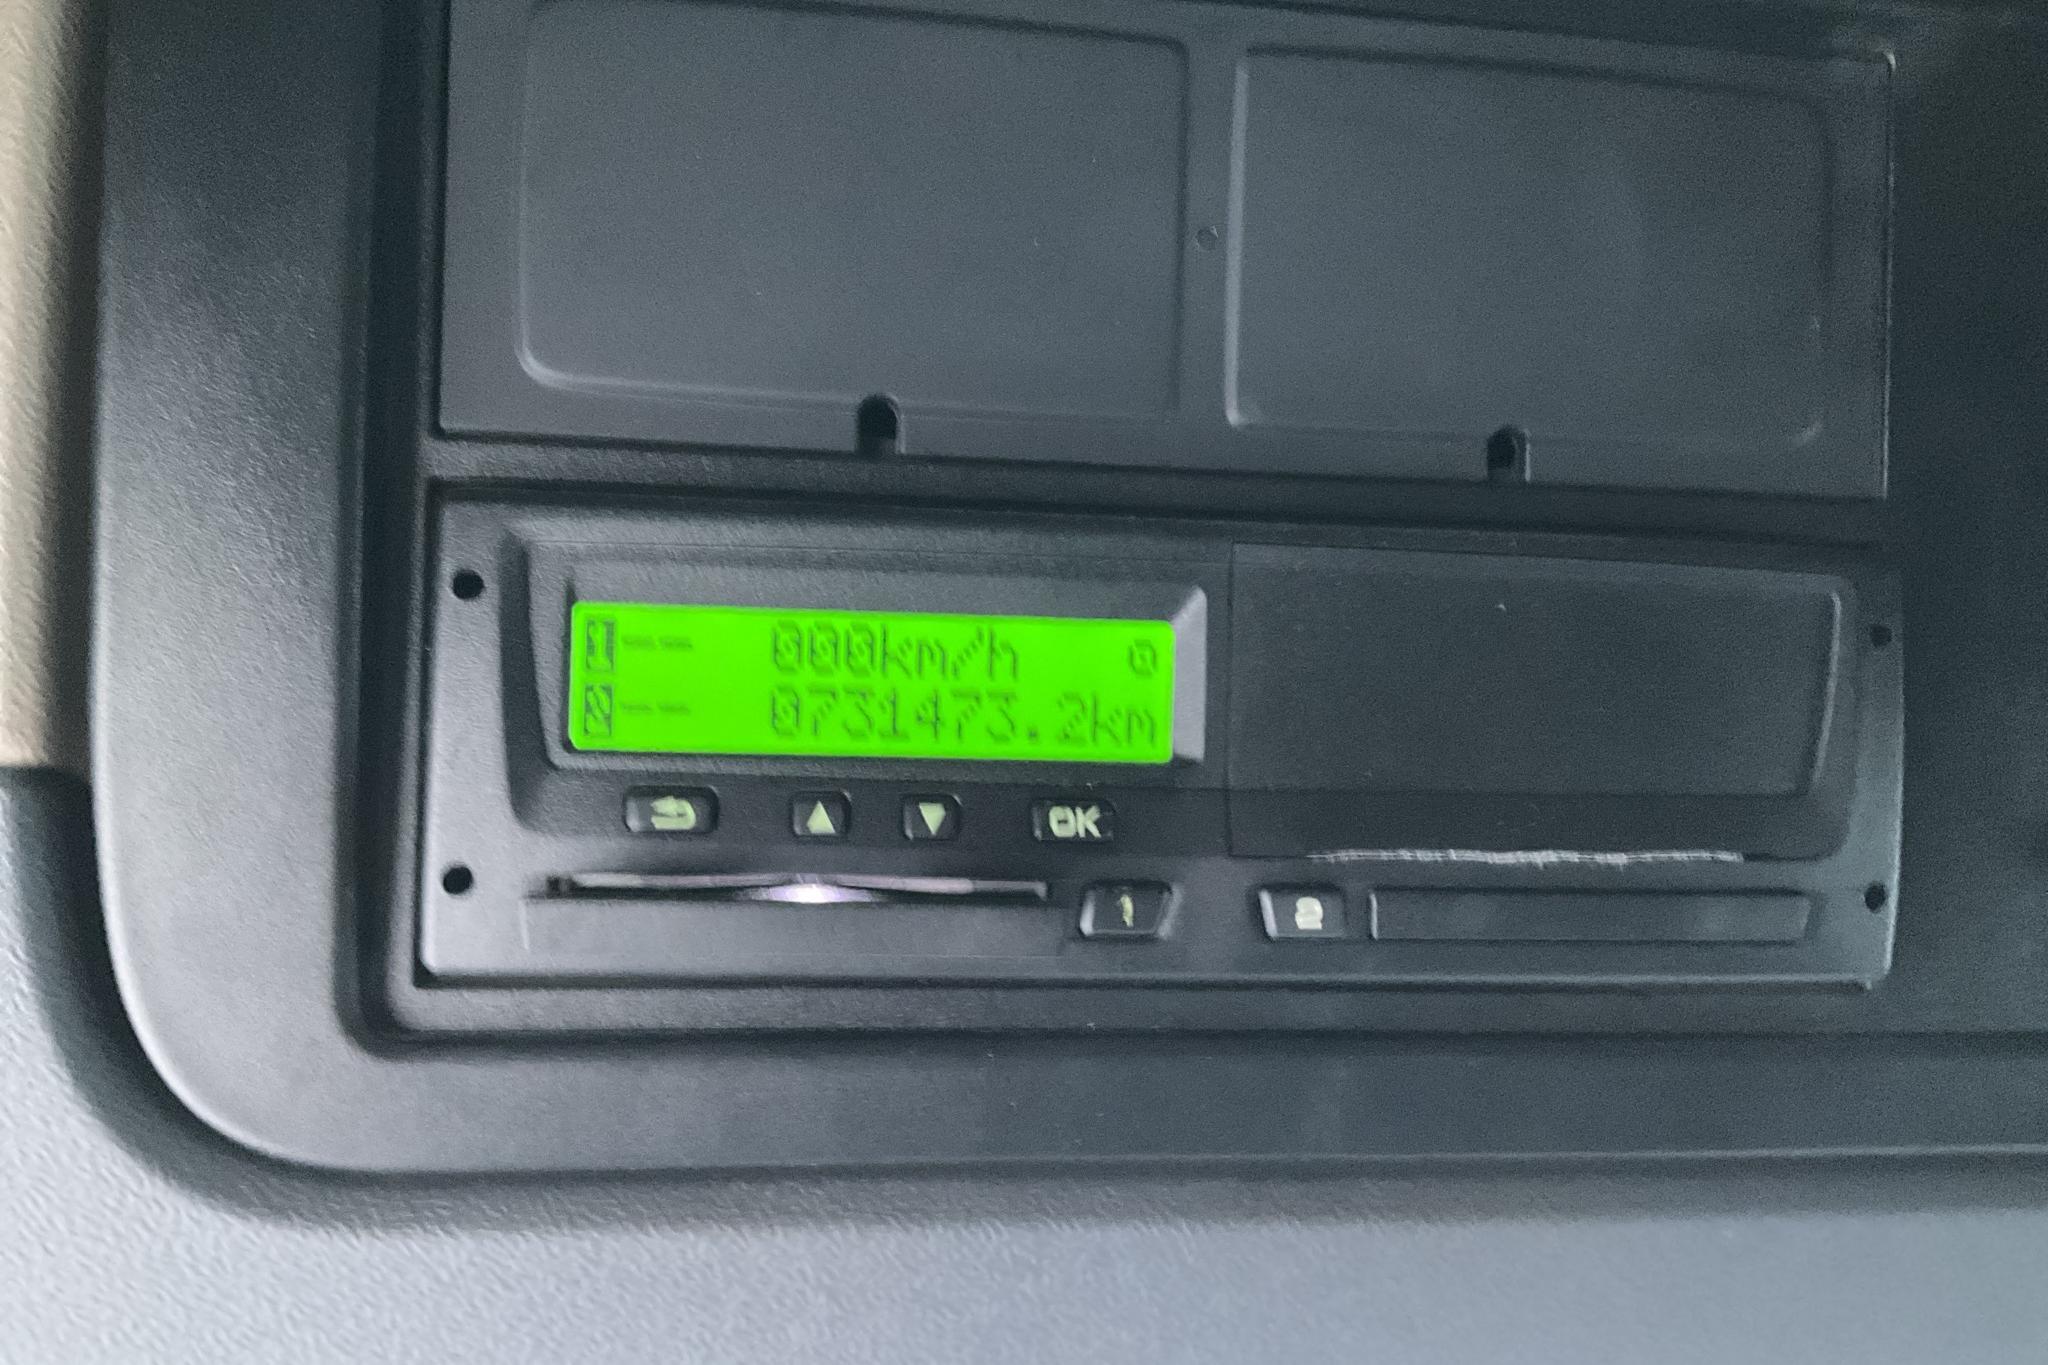 Scania R490 - 731 473 km - Automat - 2015